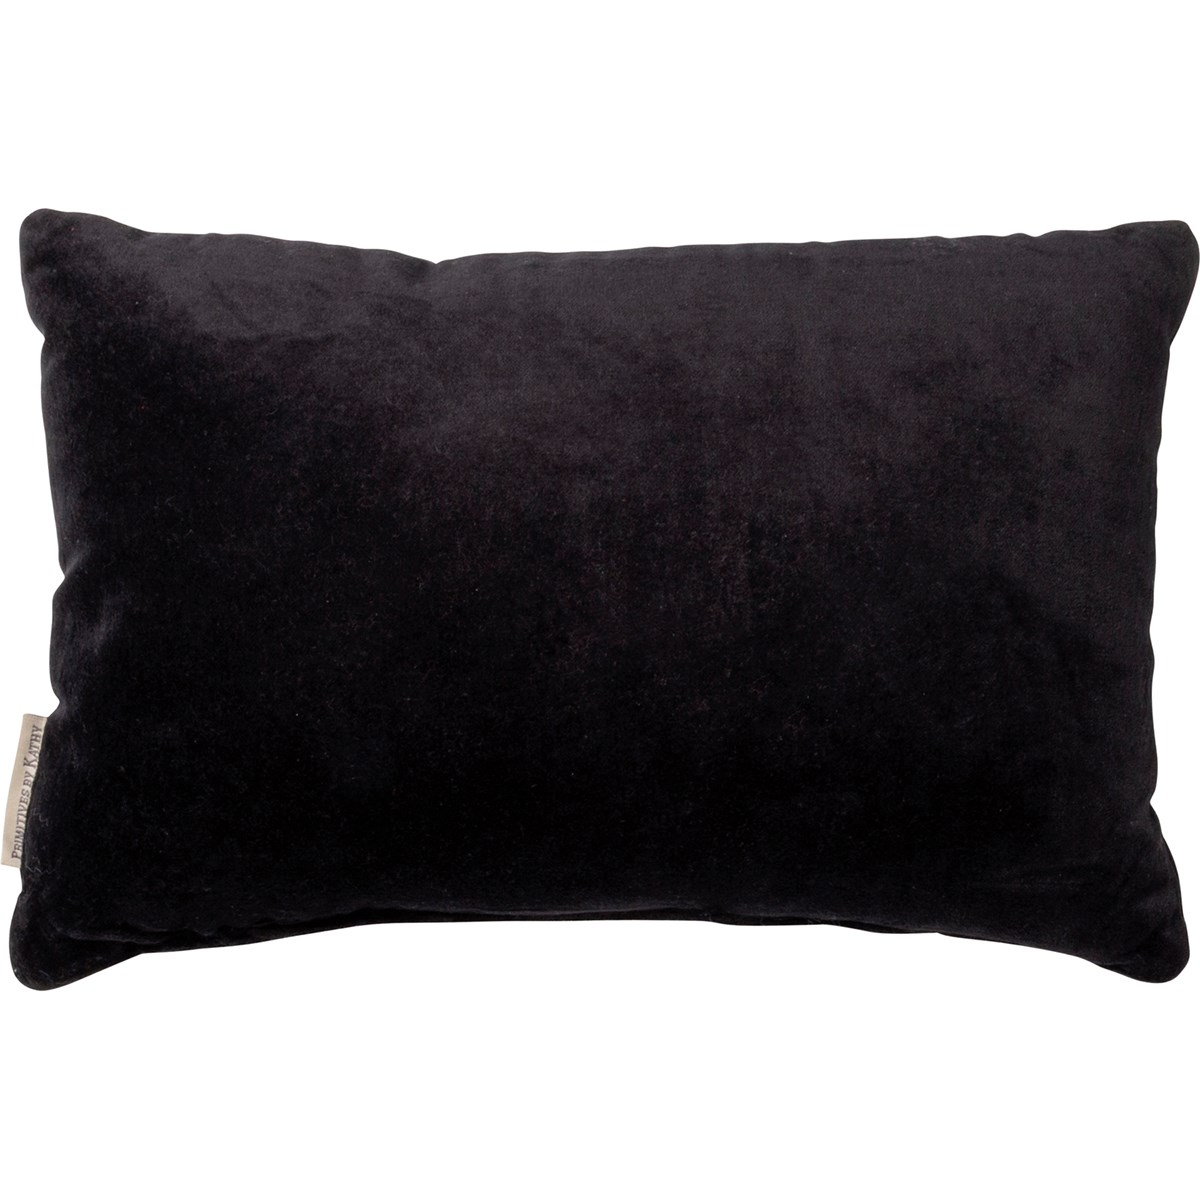 Black Boo! Pillow - Velvet, Zipper